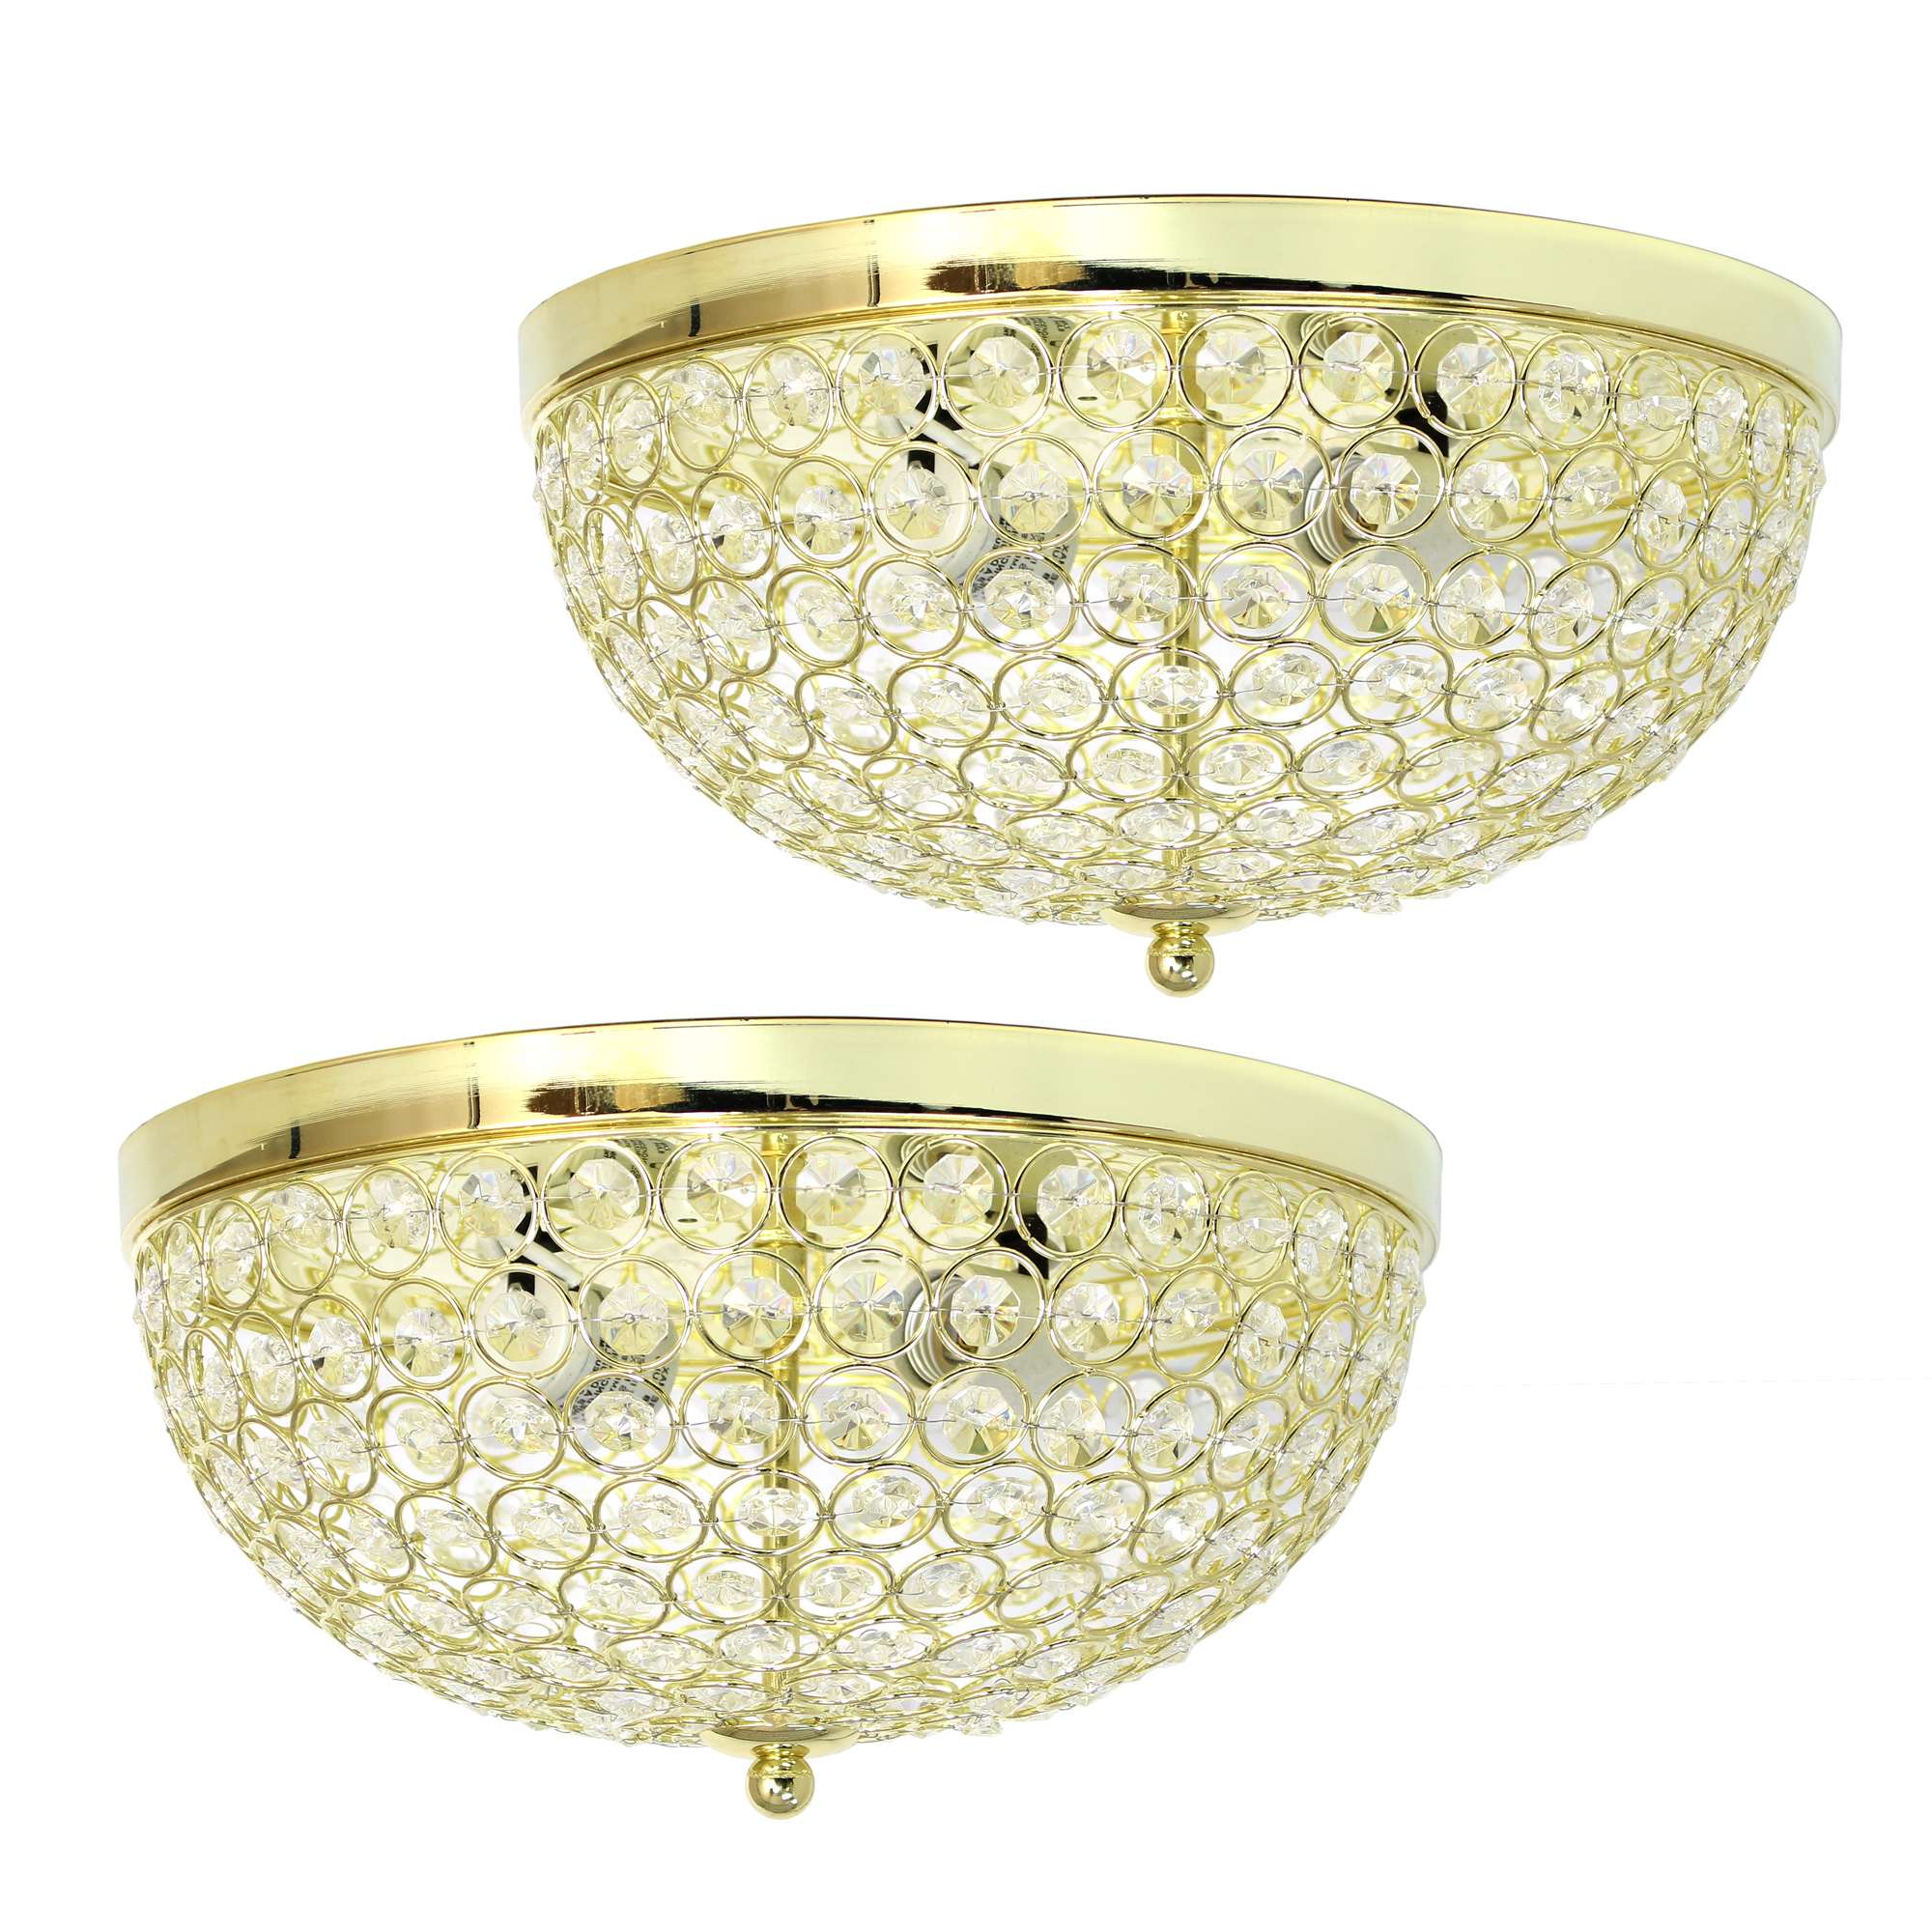 Elegant Designs 2 Light Elipse Crystal Flush Mount Ceiling Light 2 Pack, Gold